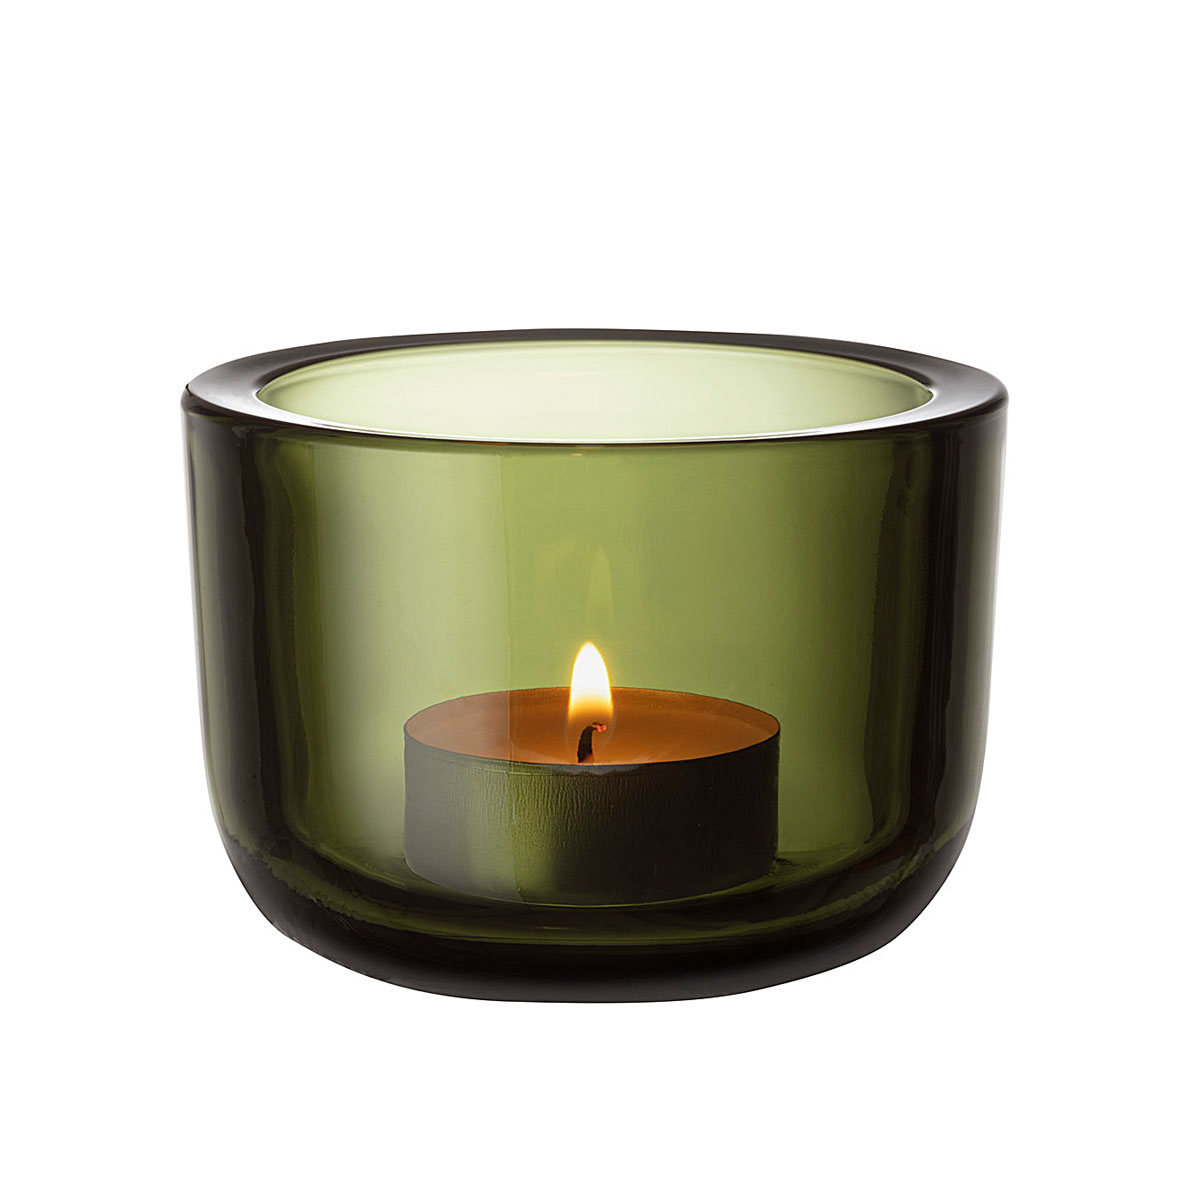 Iittala Valkea Tealight Candleholder Moss Green